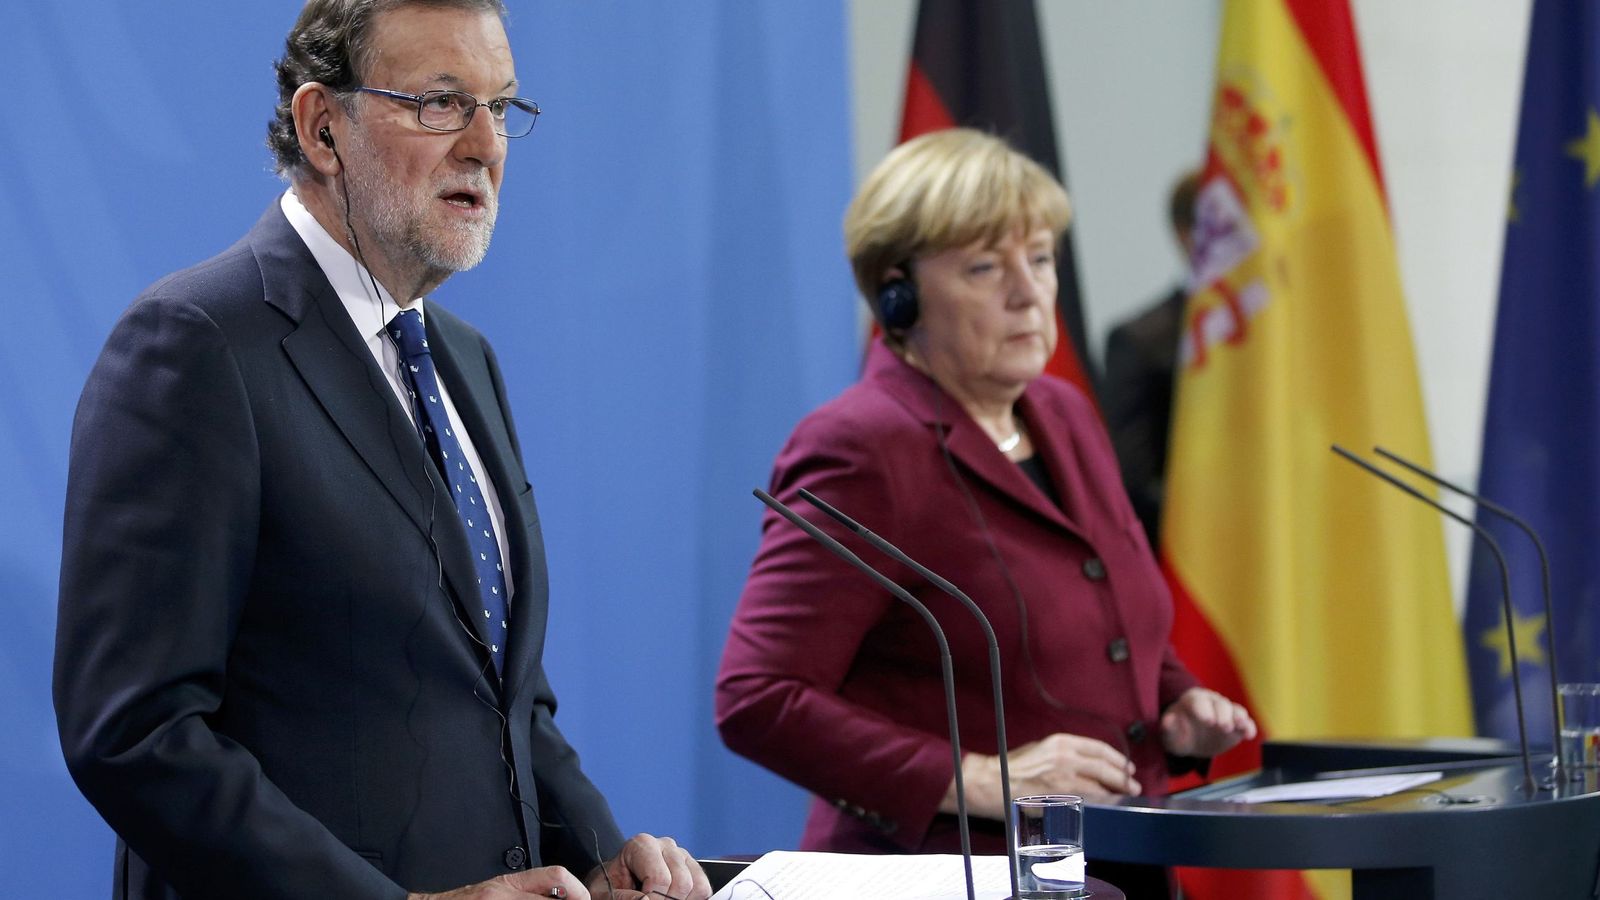 Foto: Mariano Rajoy y Angela Merkel durante la rueda de prensa en Berlin. (Reuters)